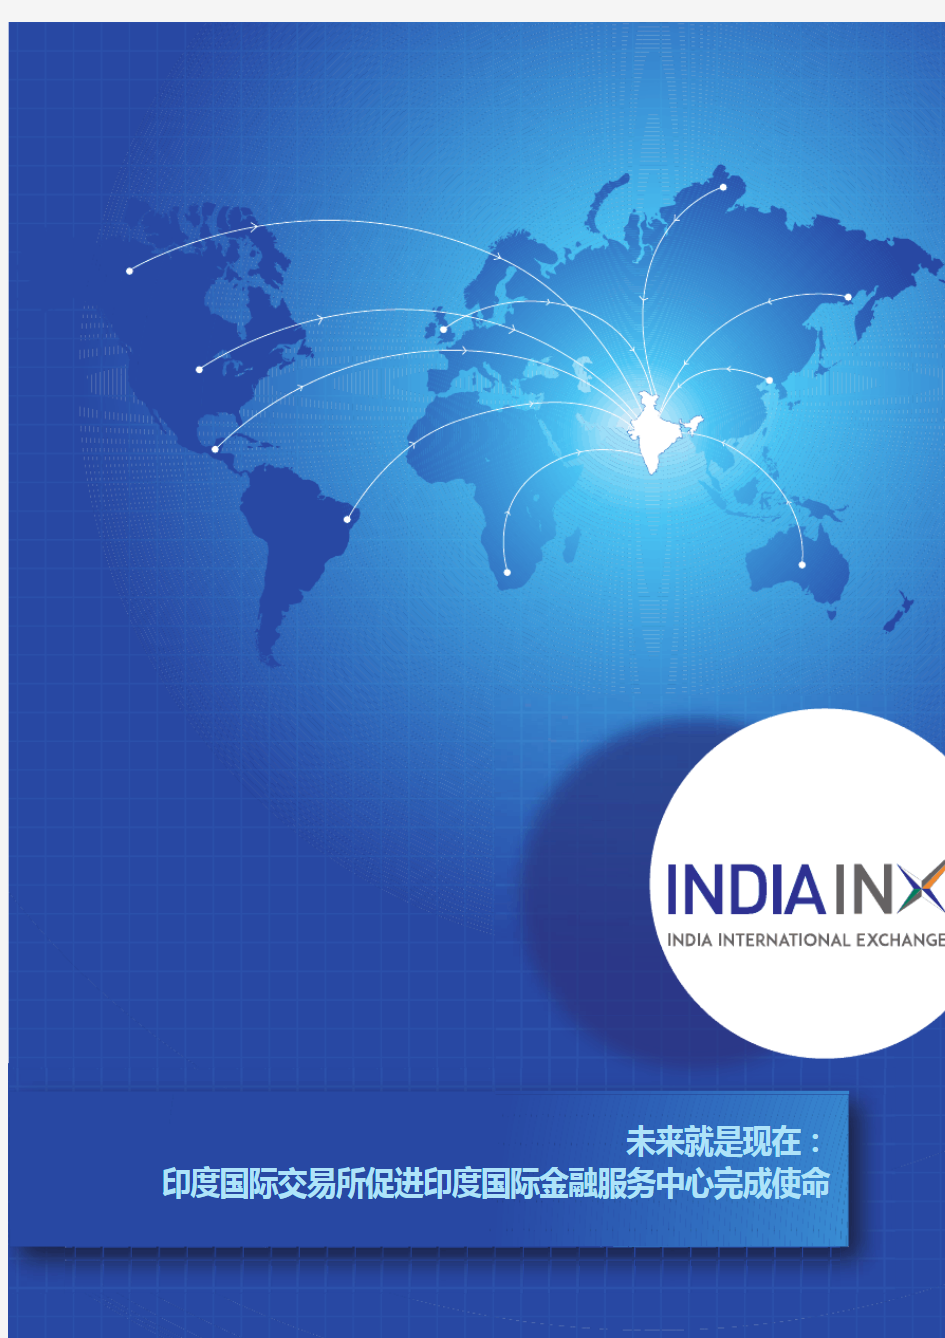 印度国际交易所-IndiaINX